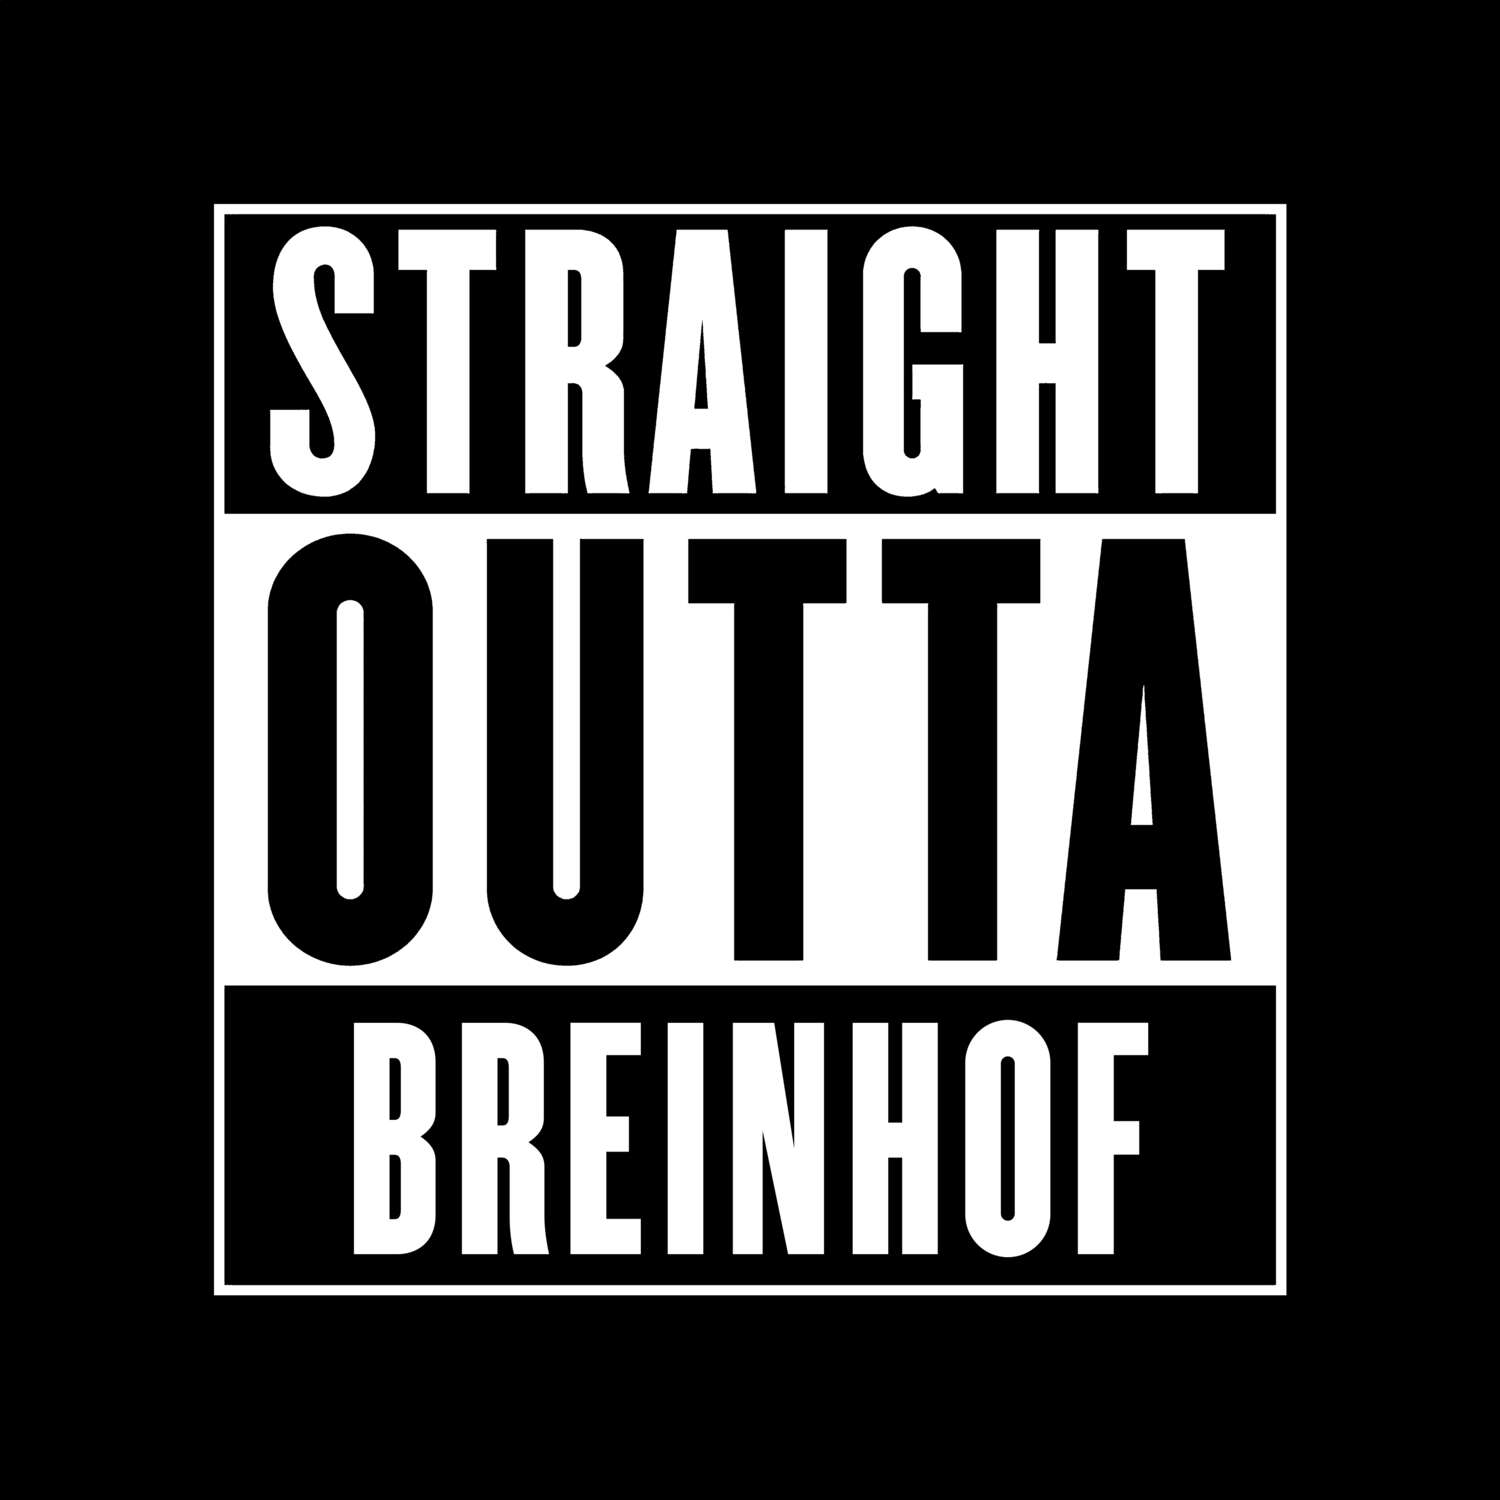 Breinhof T-Shirt »Straight Outta«